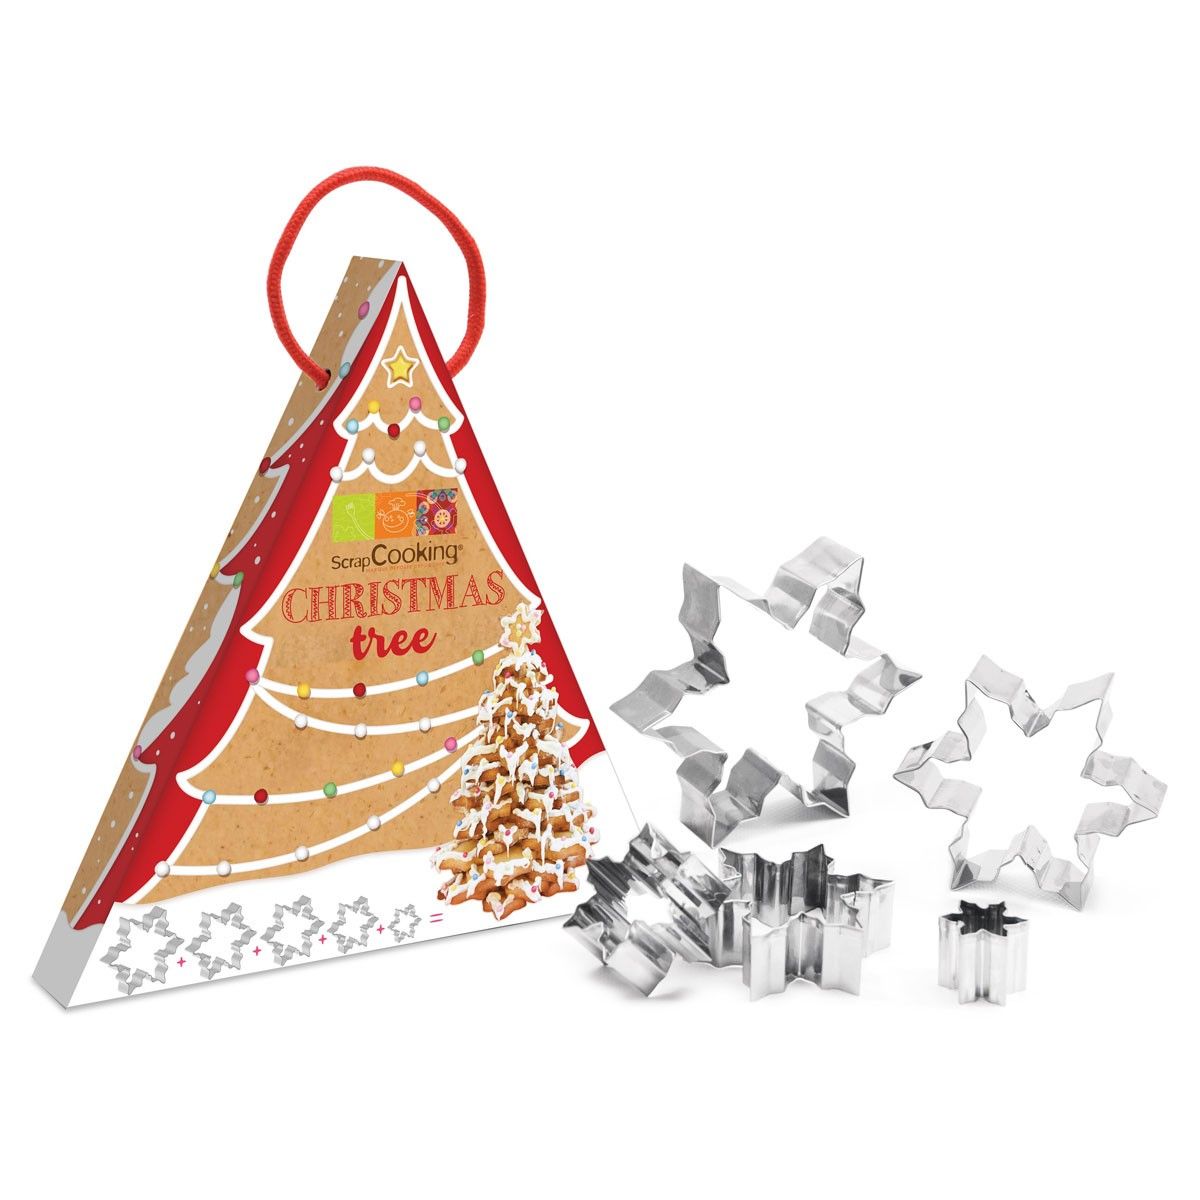 ScrapCooking - Kit till en julgran av pepparkakor